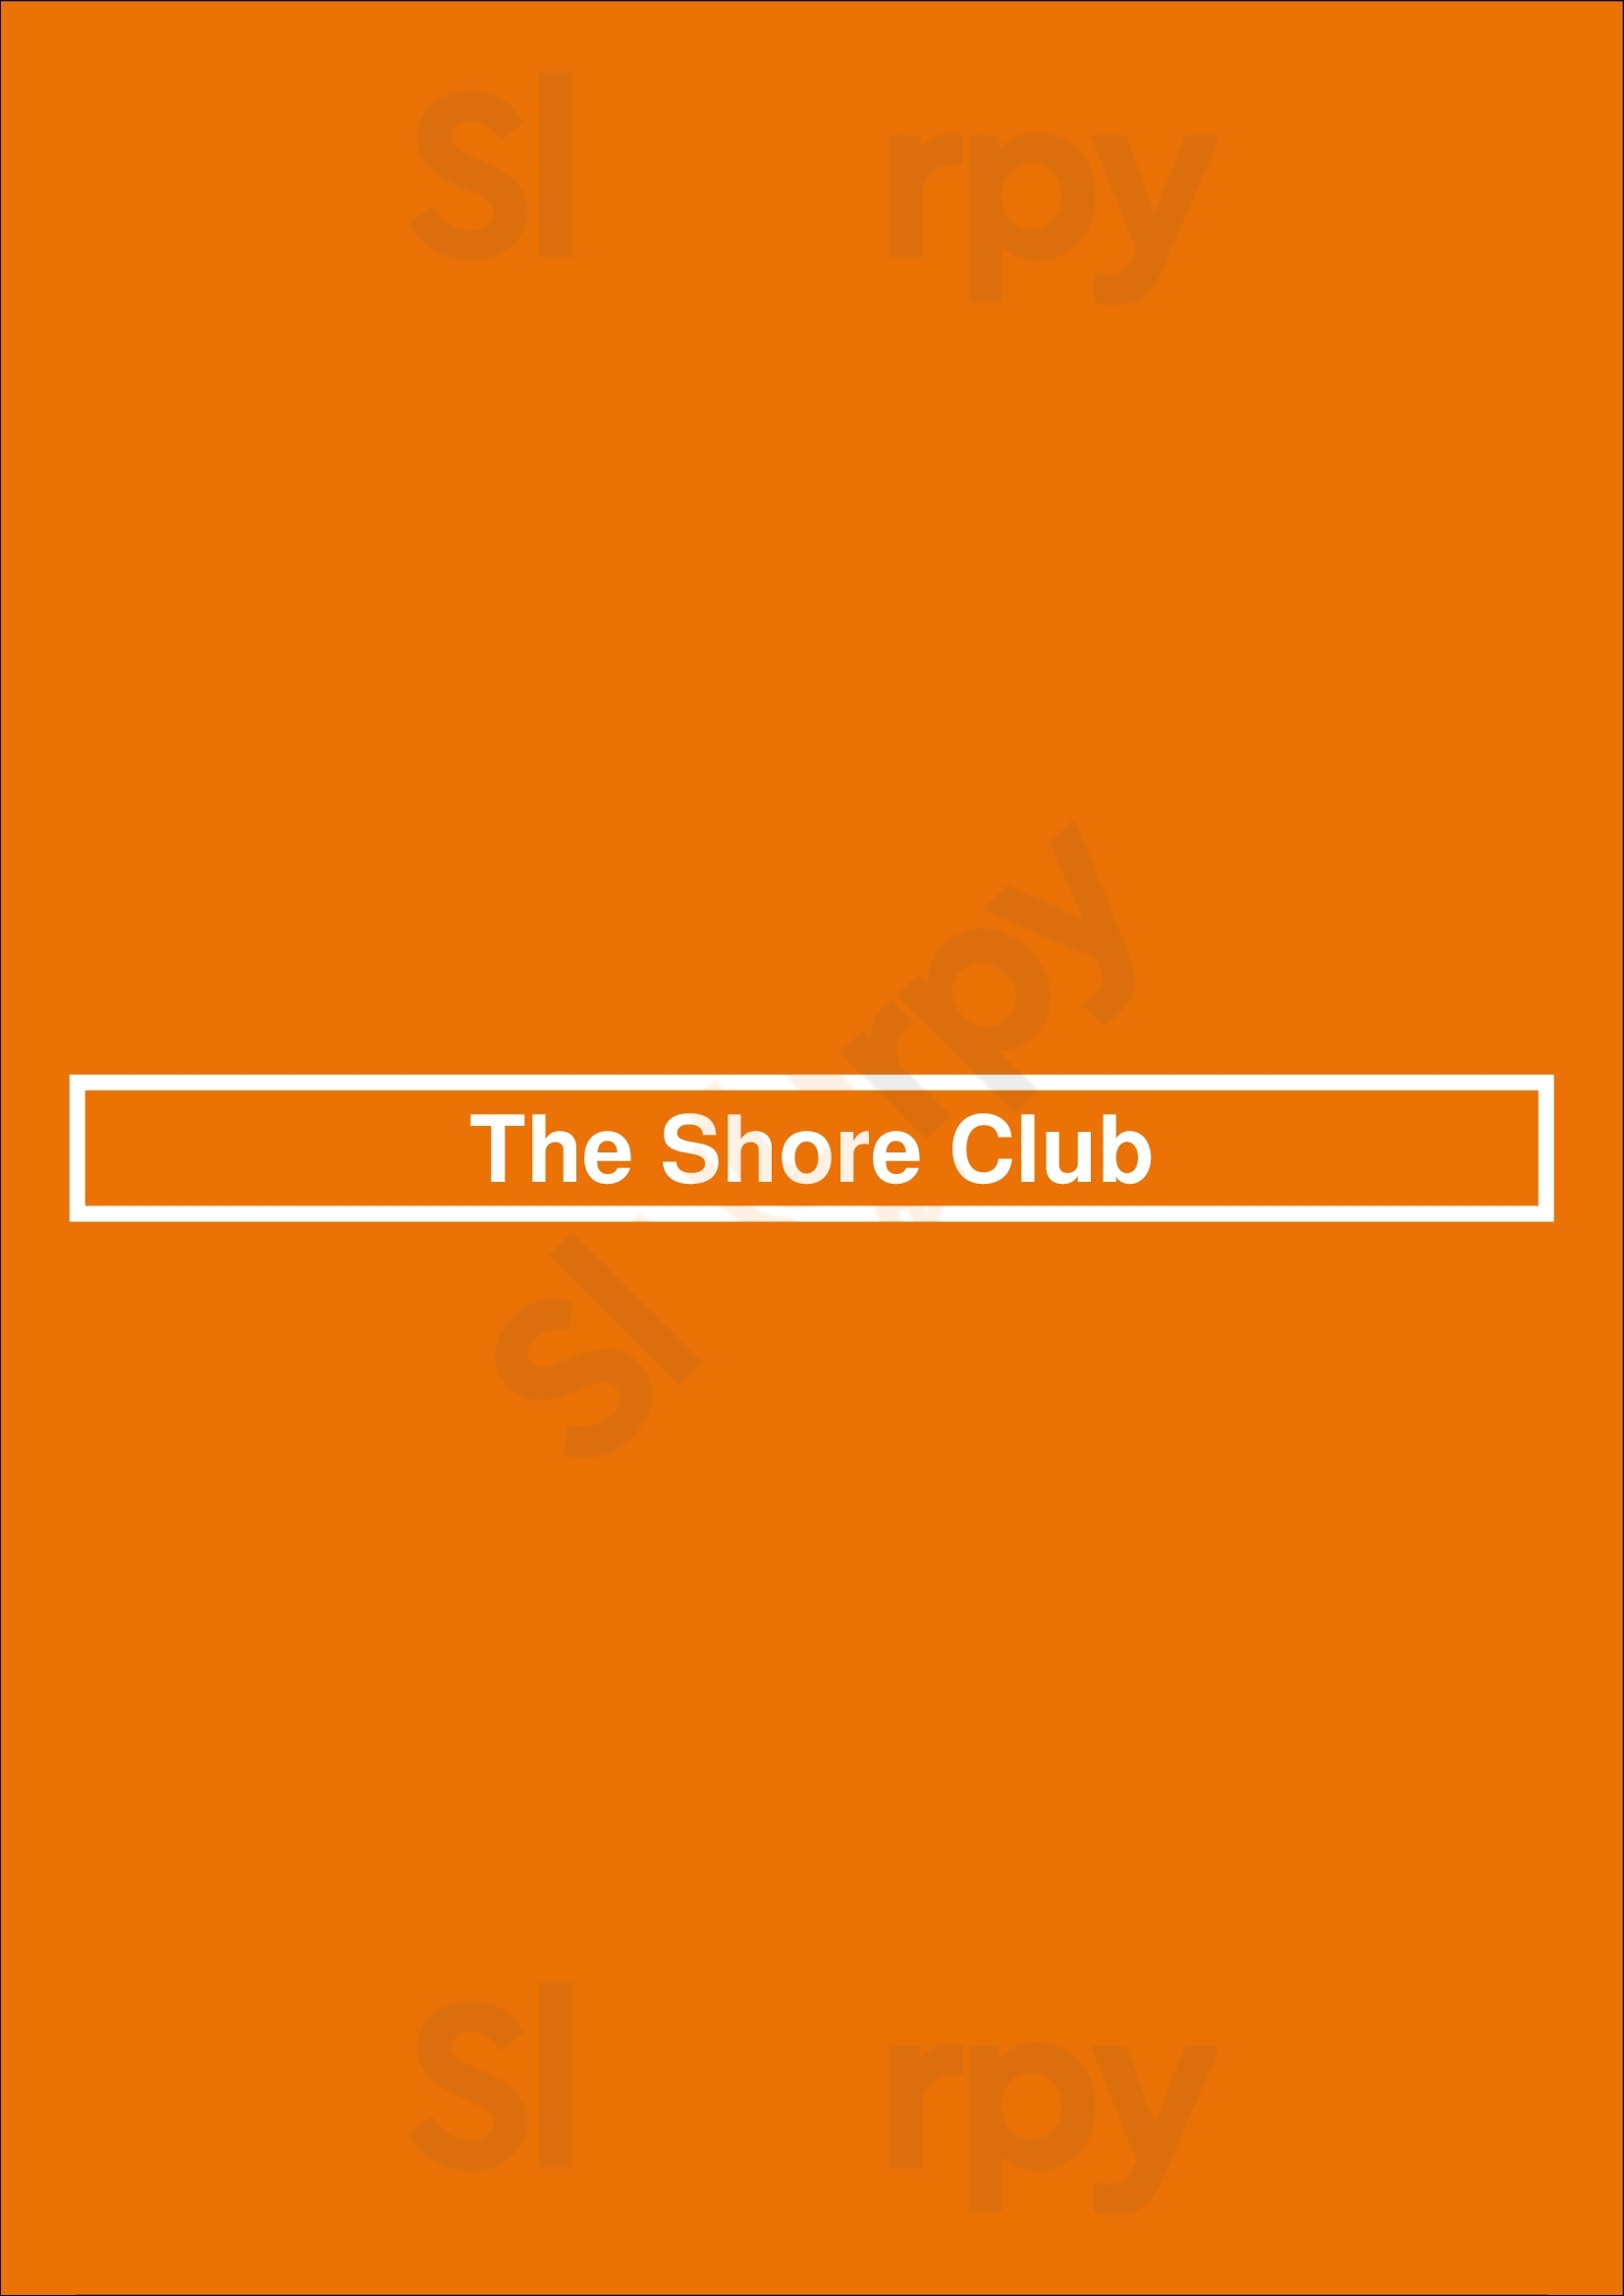 The Shore Club Ottawa Menu - 1